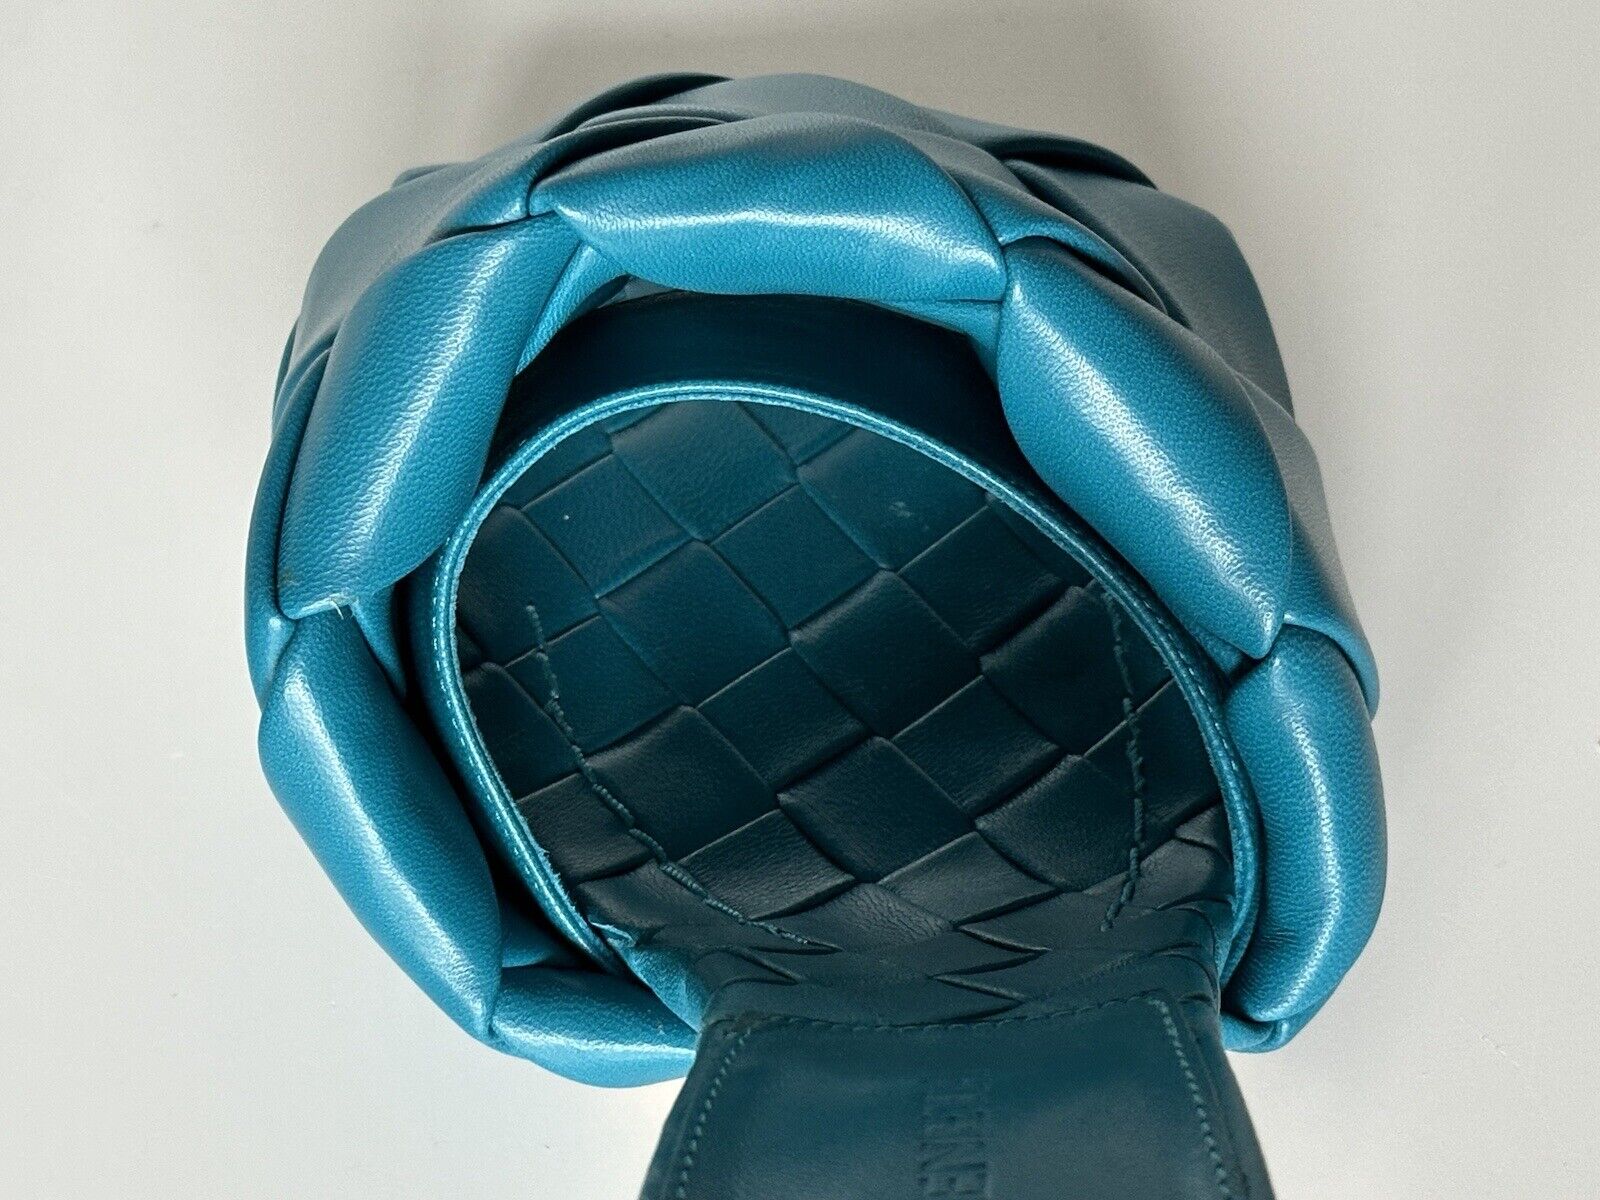 СЗТ $1500 Bottega Veneta Lido Intrecciato кожаные сабо винтажные синие 8 США 608854 